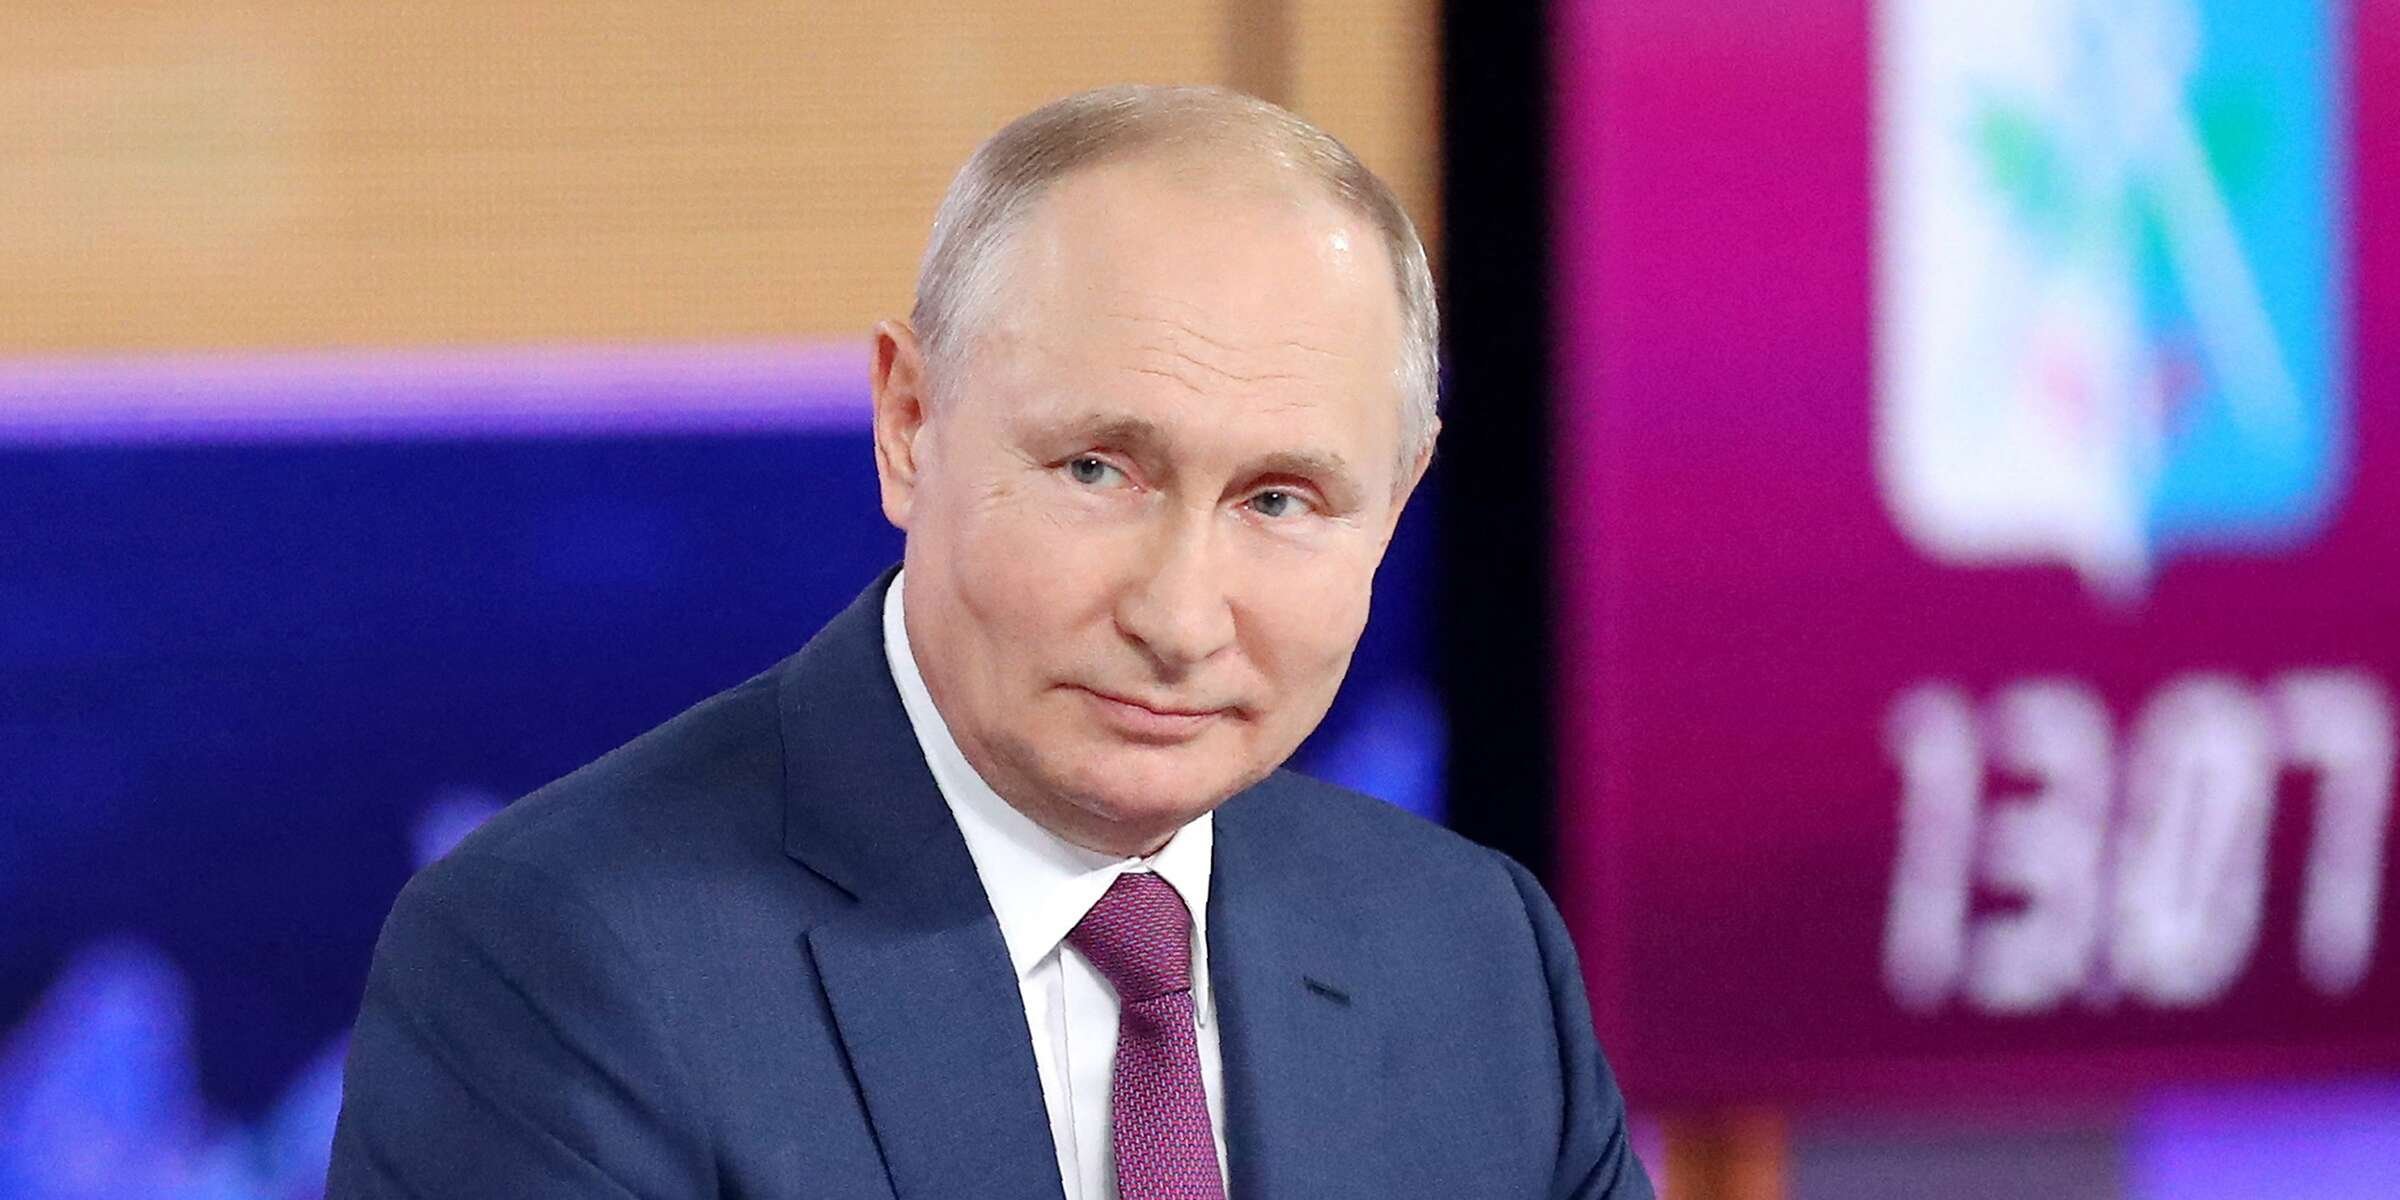  Vladimir Putin a devenit cea mai detestată persoană de pe internet. Milioane de postări negative la adresa sa